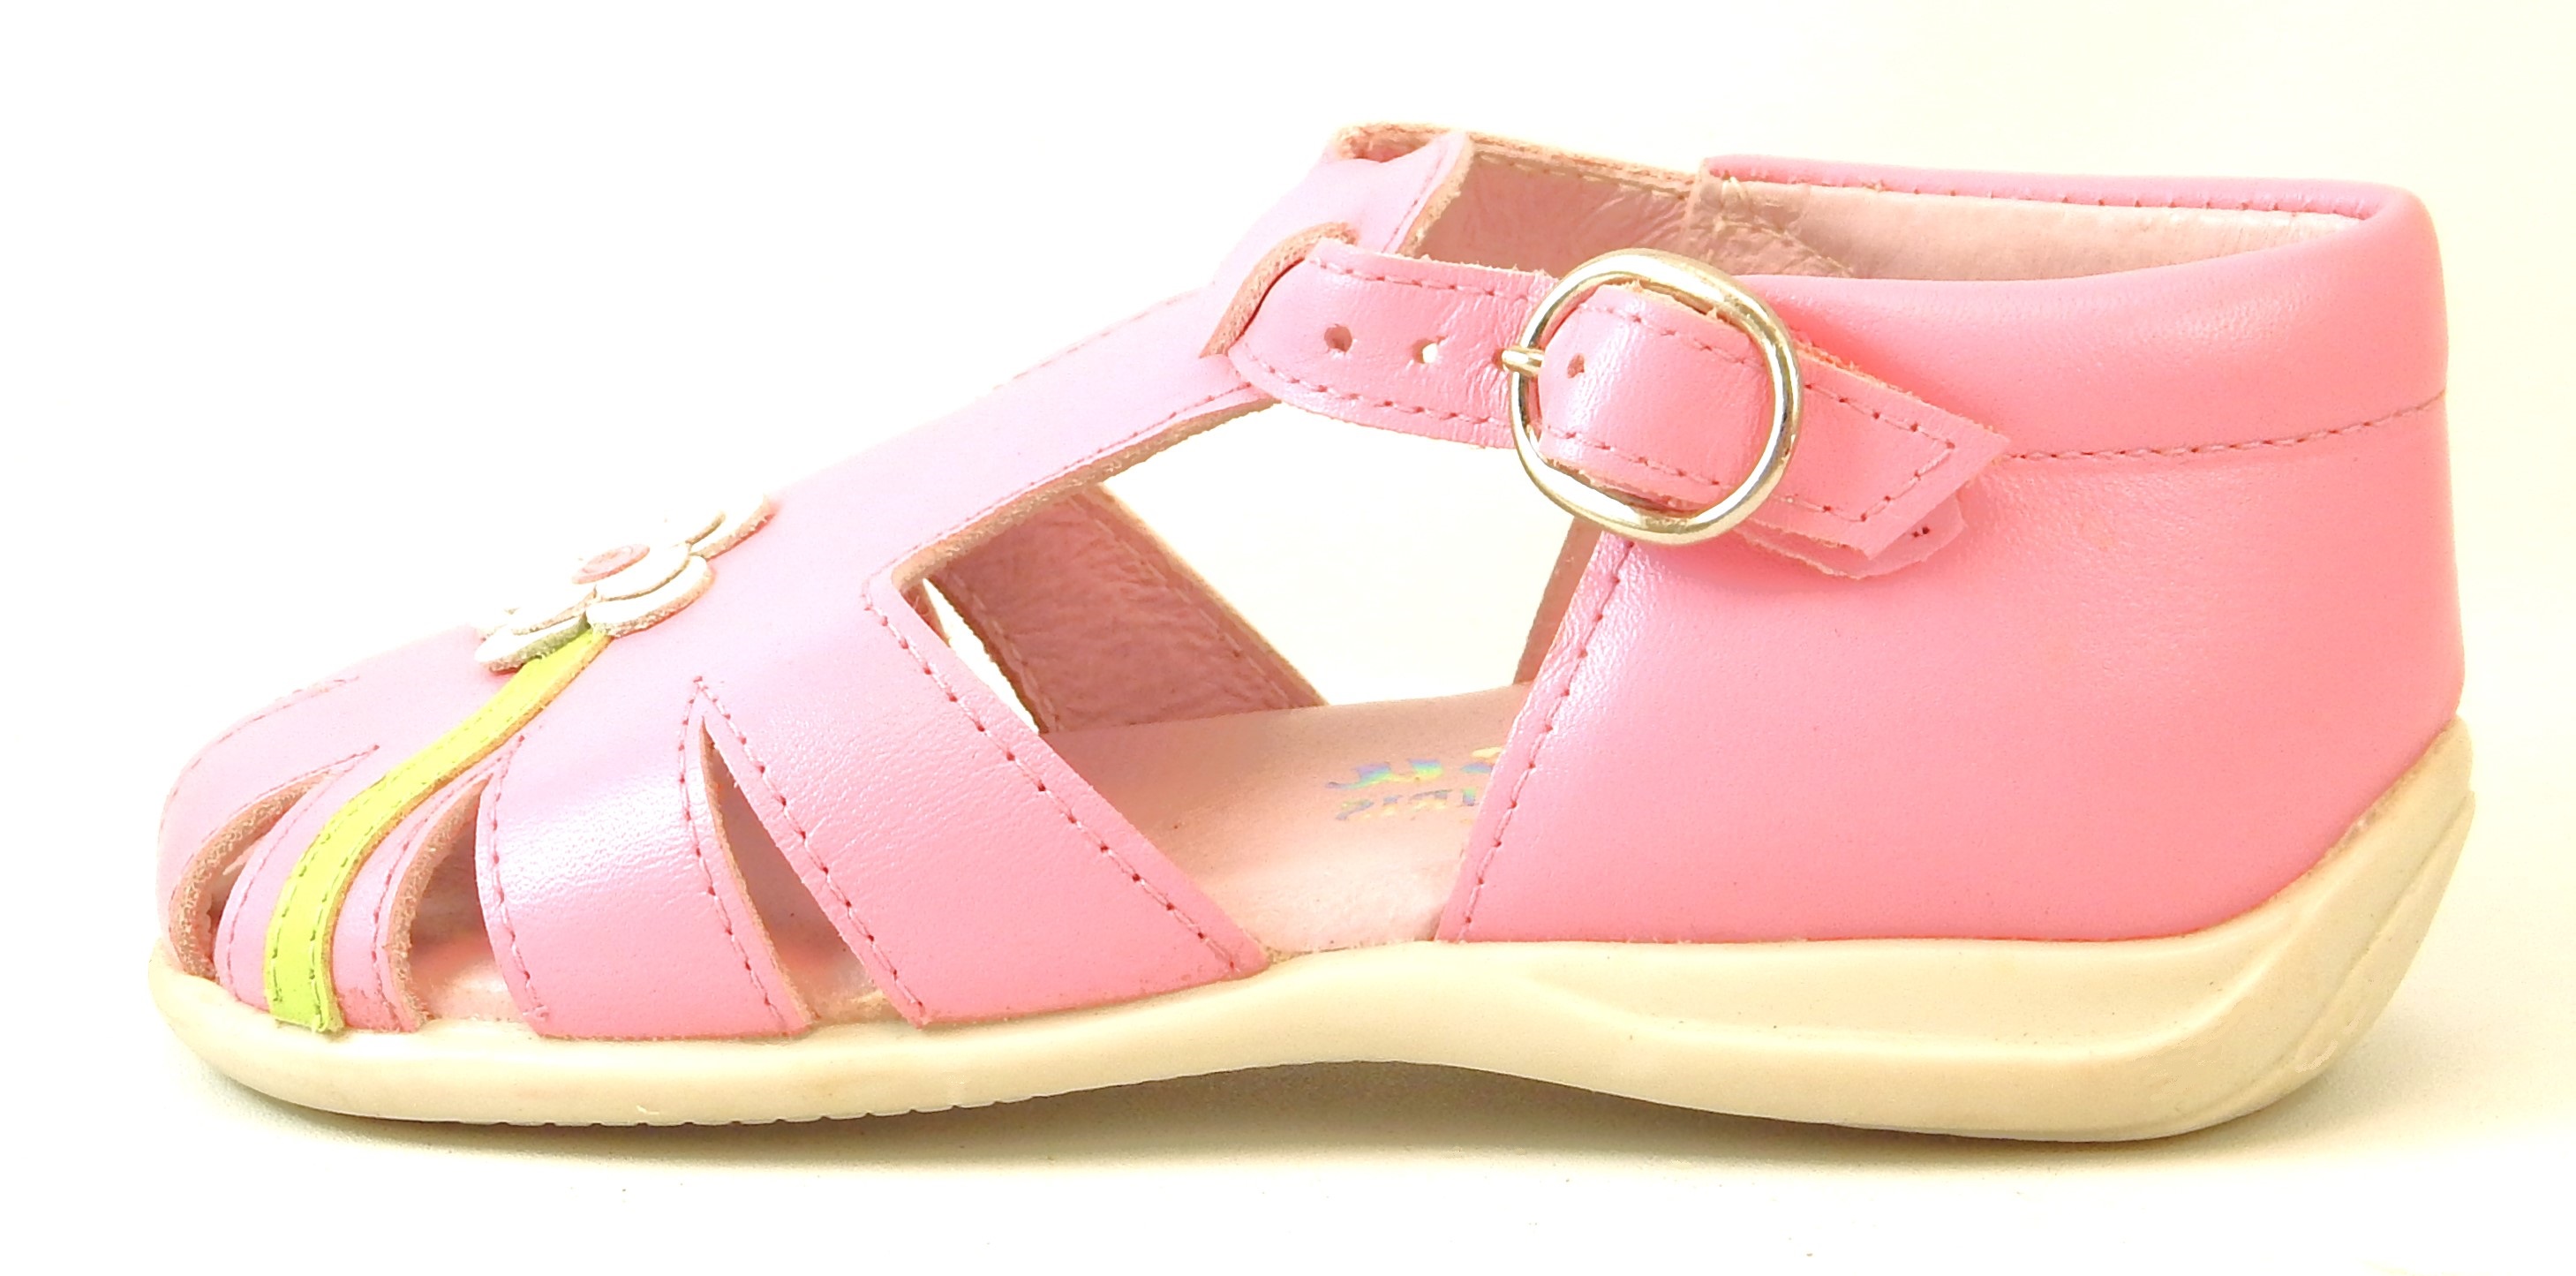 B-7054 - Fuschia Shoe Sandals - Euro 23 Size 6-6.5